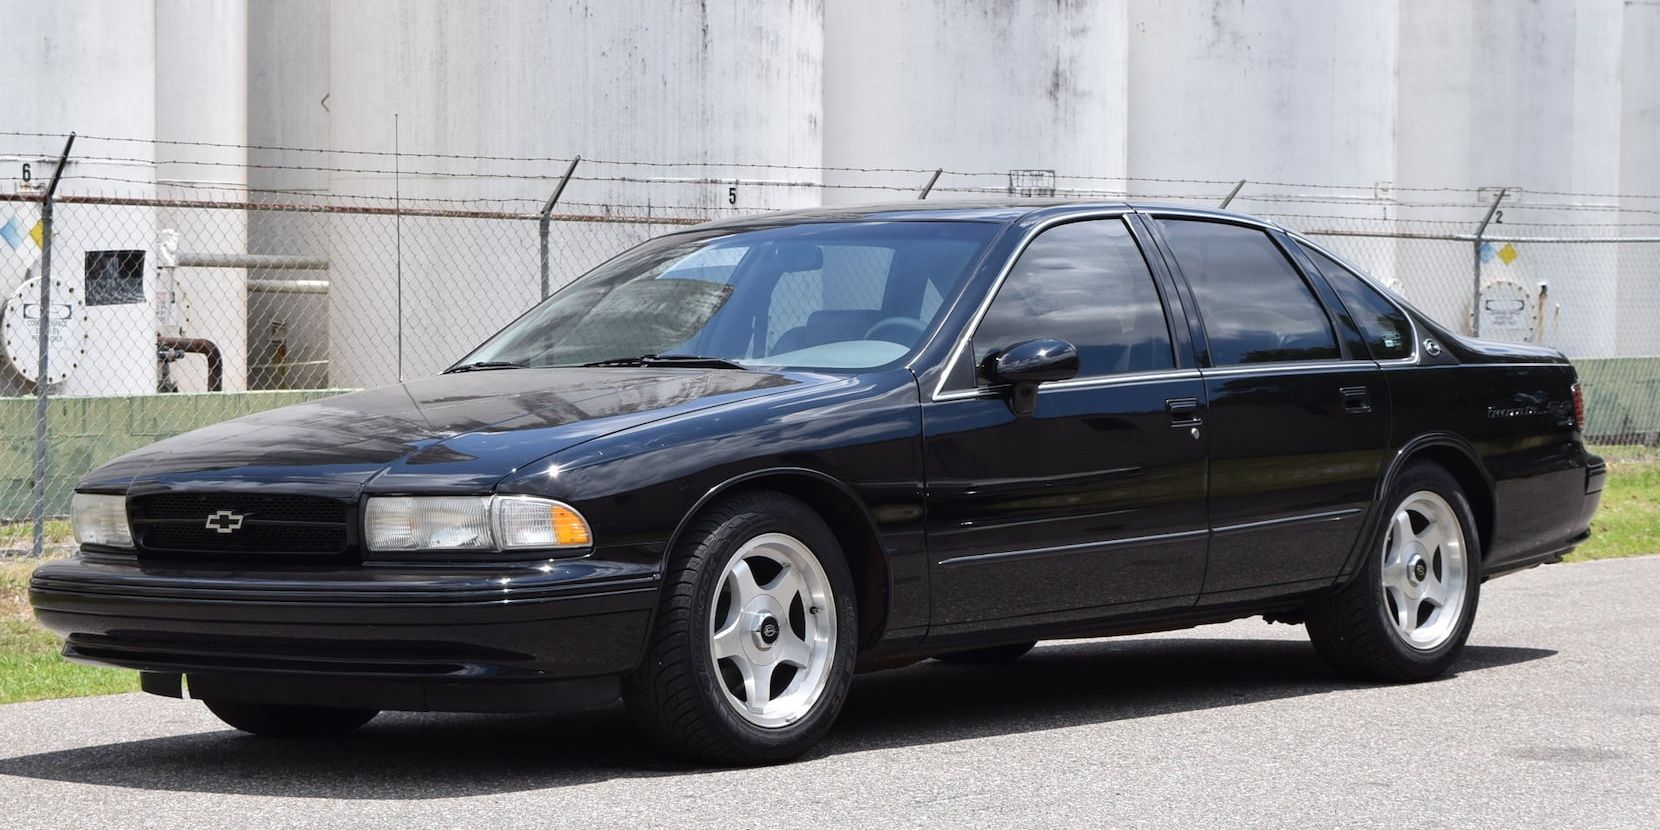 1994 Chevrolet Impala SS in Black